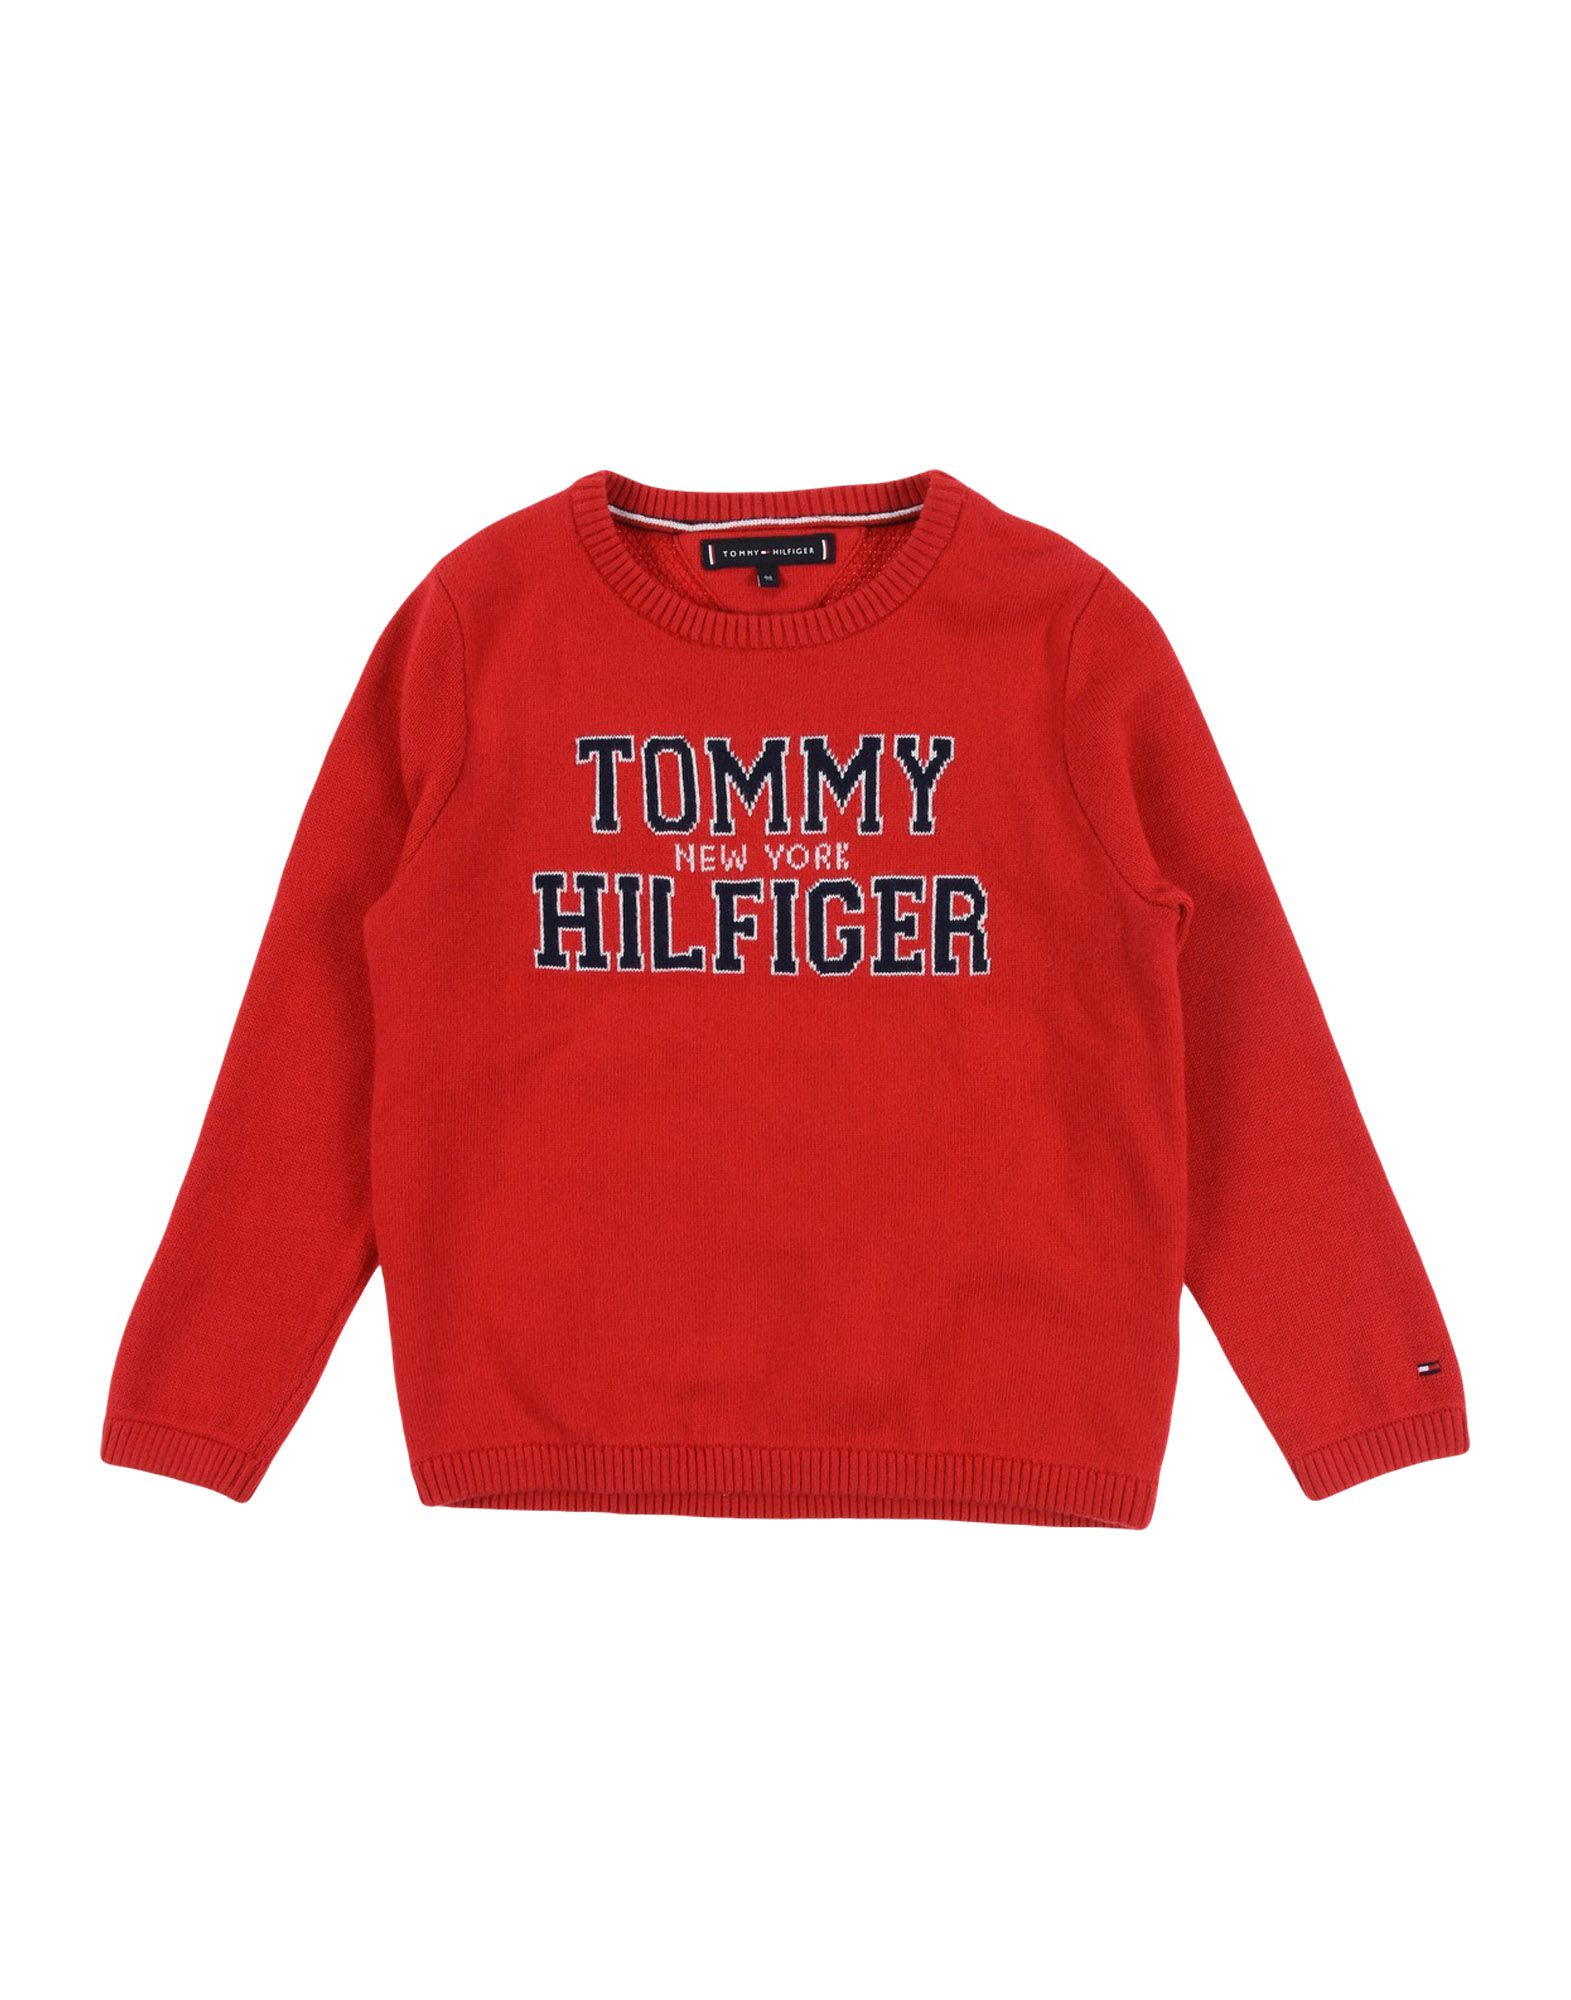 《送料無料》TOMMY HILFIGER ボーイズ 3-8 歳 プルオーバー レッド 3 コットン 55% / ポリエステル 30% / レーヨン 15%